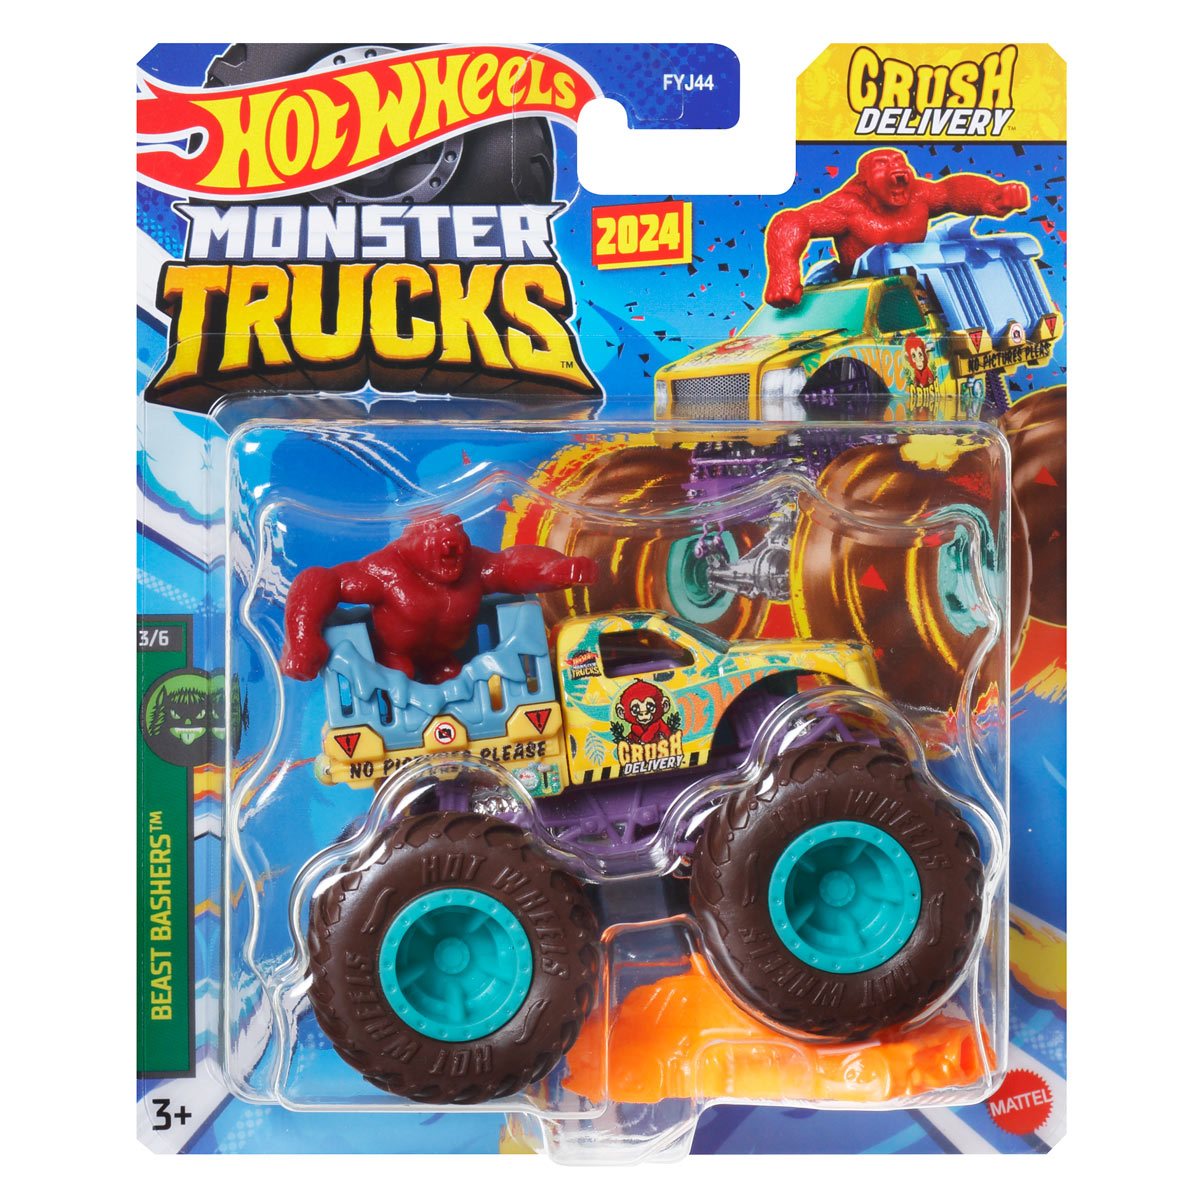 MATTEL Pack de 2 Monster Trucks double démolition 1/64ème - Hot